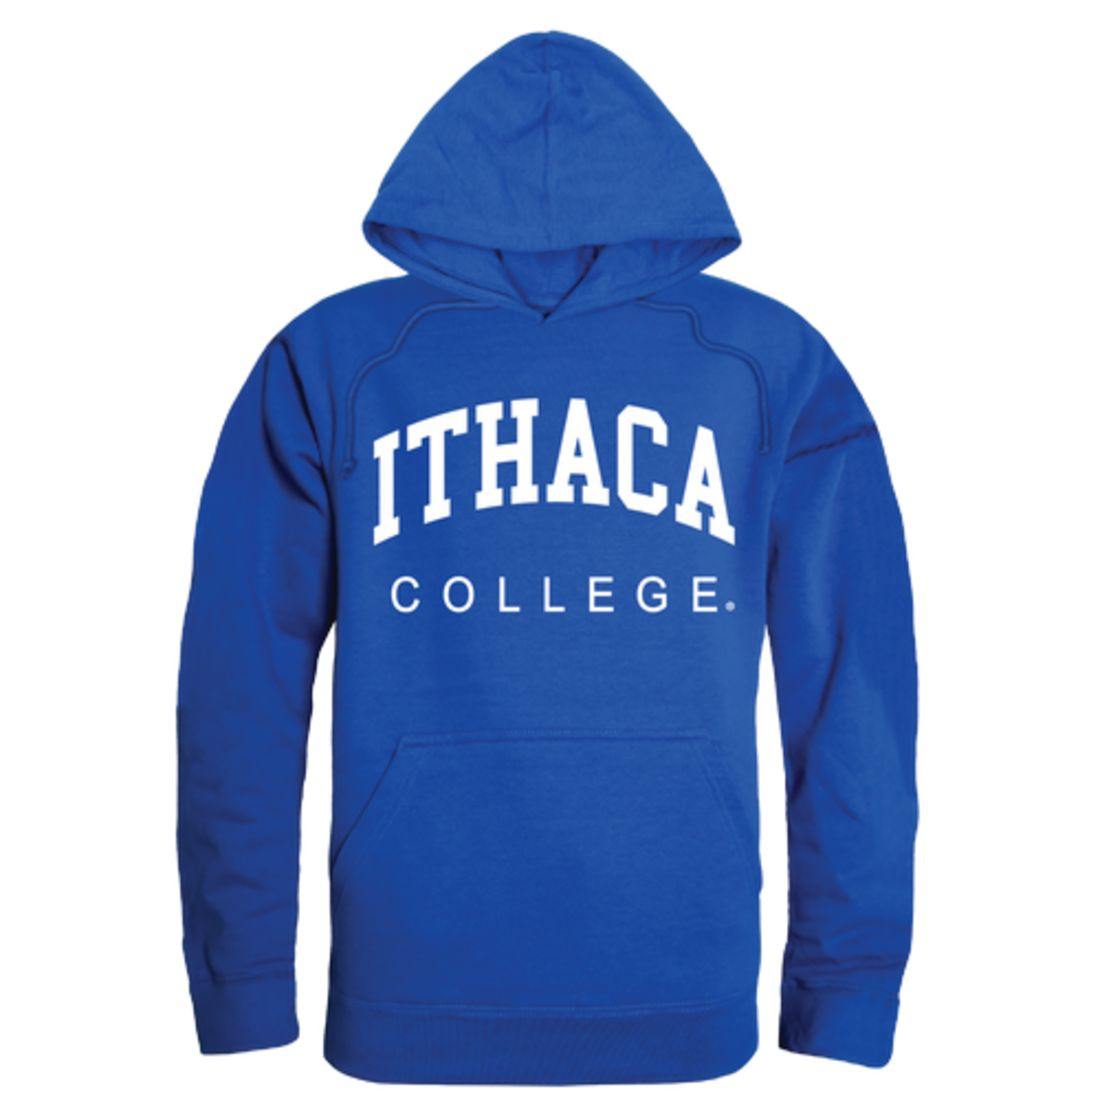 Ithaca College Bombers College Hoodie Sweatshirt Royal-Campus-Wardrobe